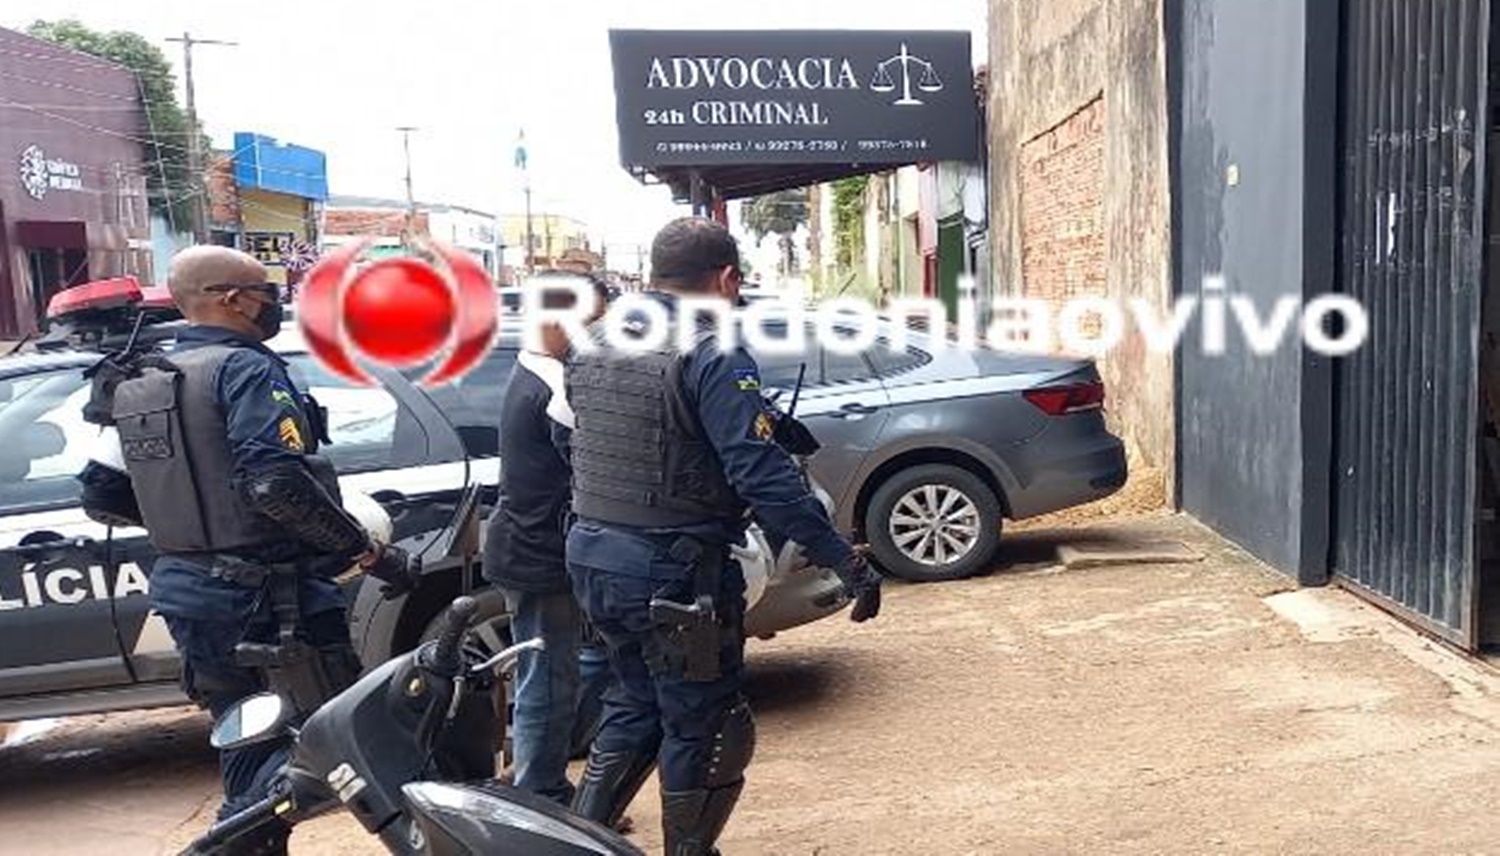 DESAVENÇA: Policial penal é preso acusado de tentar matar vizinho a tiros